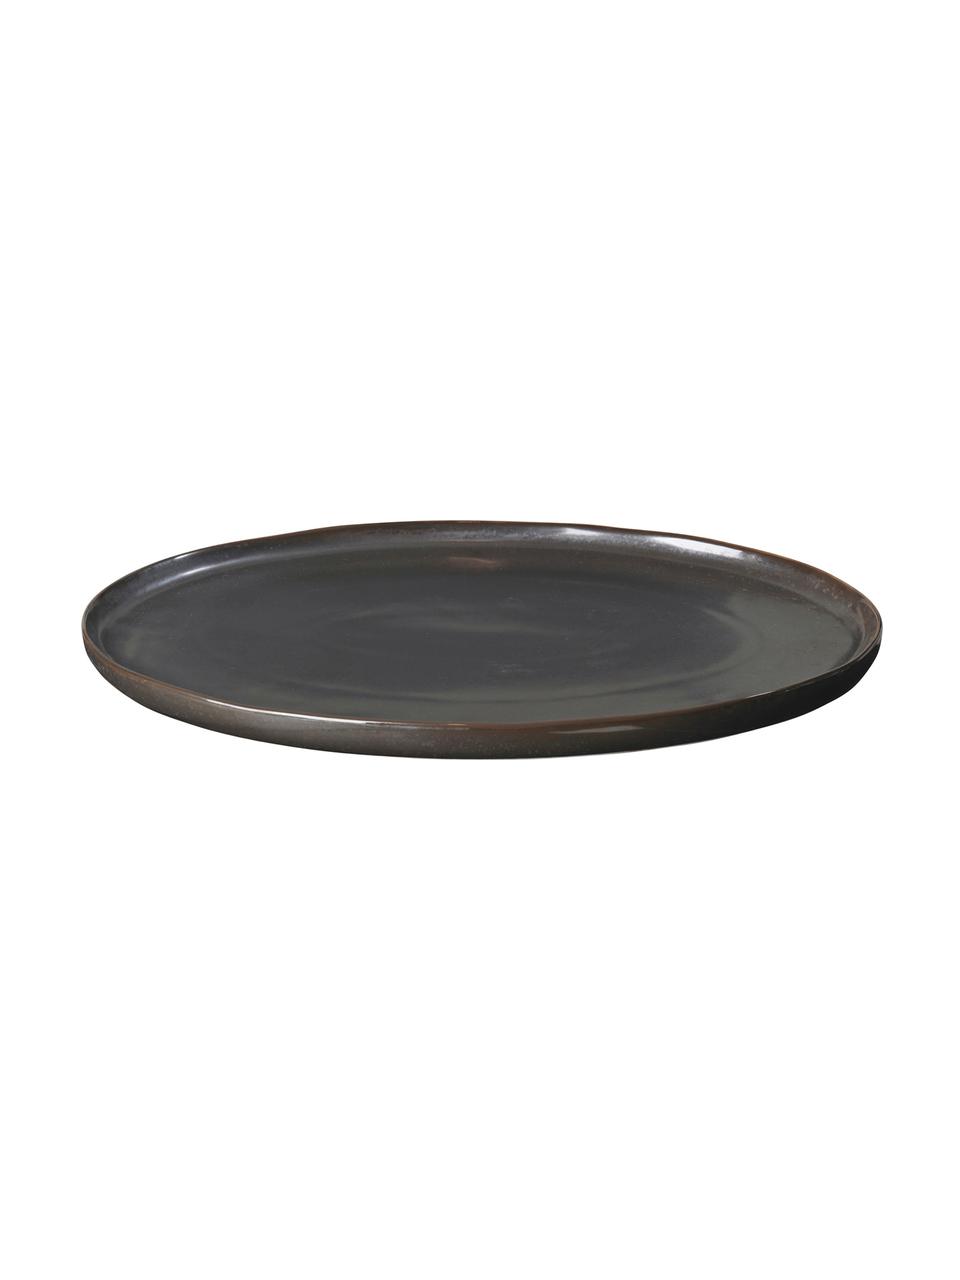 Ručně vyrobený servírovací talíř Esrum Night, D 39 x Š 26 cm, Šedavě hnědá, matná třpytivá stříbrná